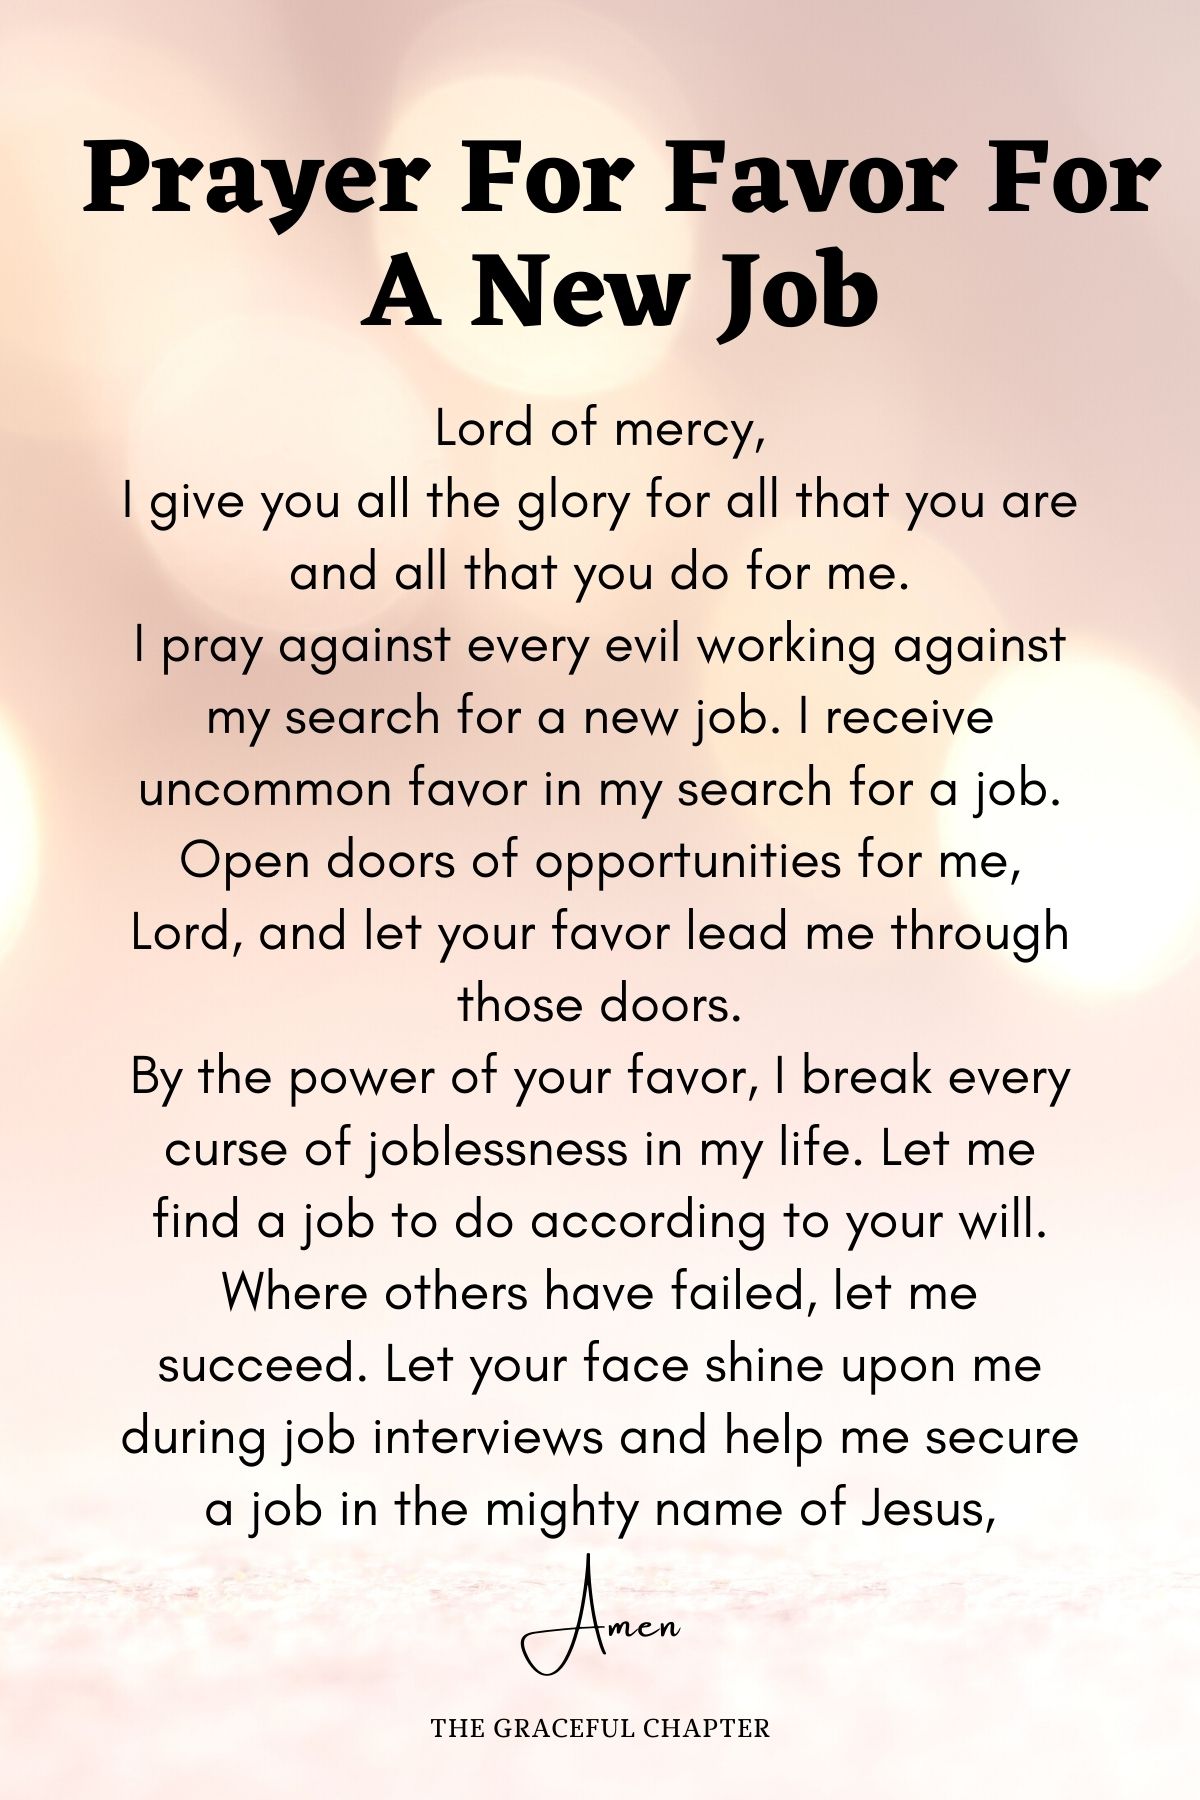 Prayer for favor for a new job